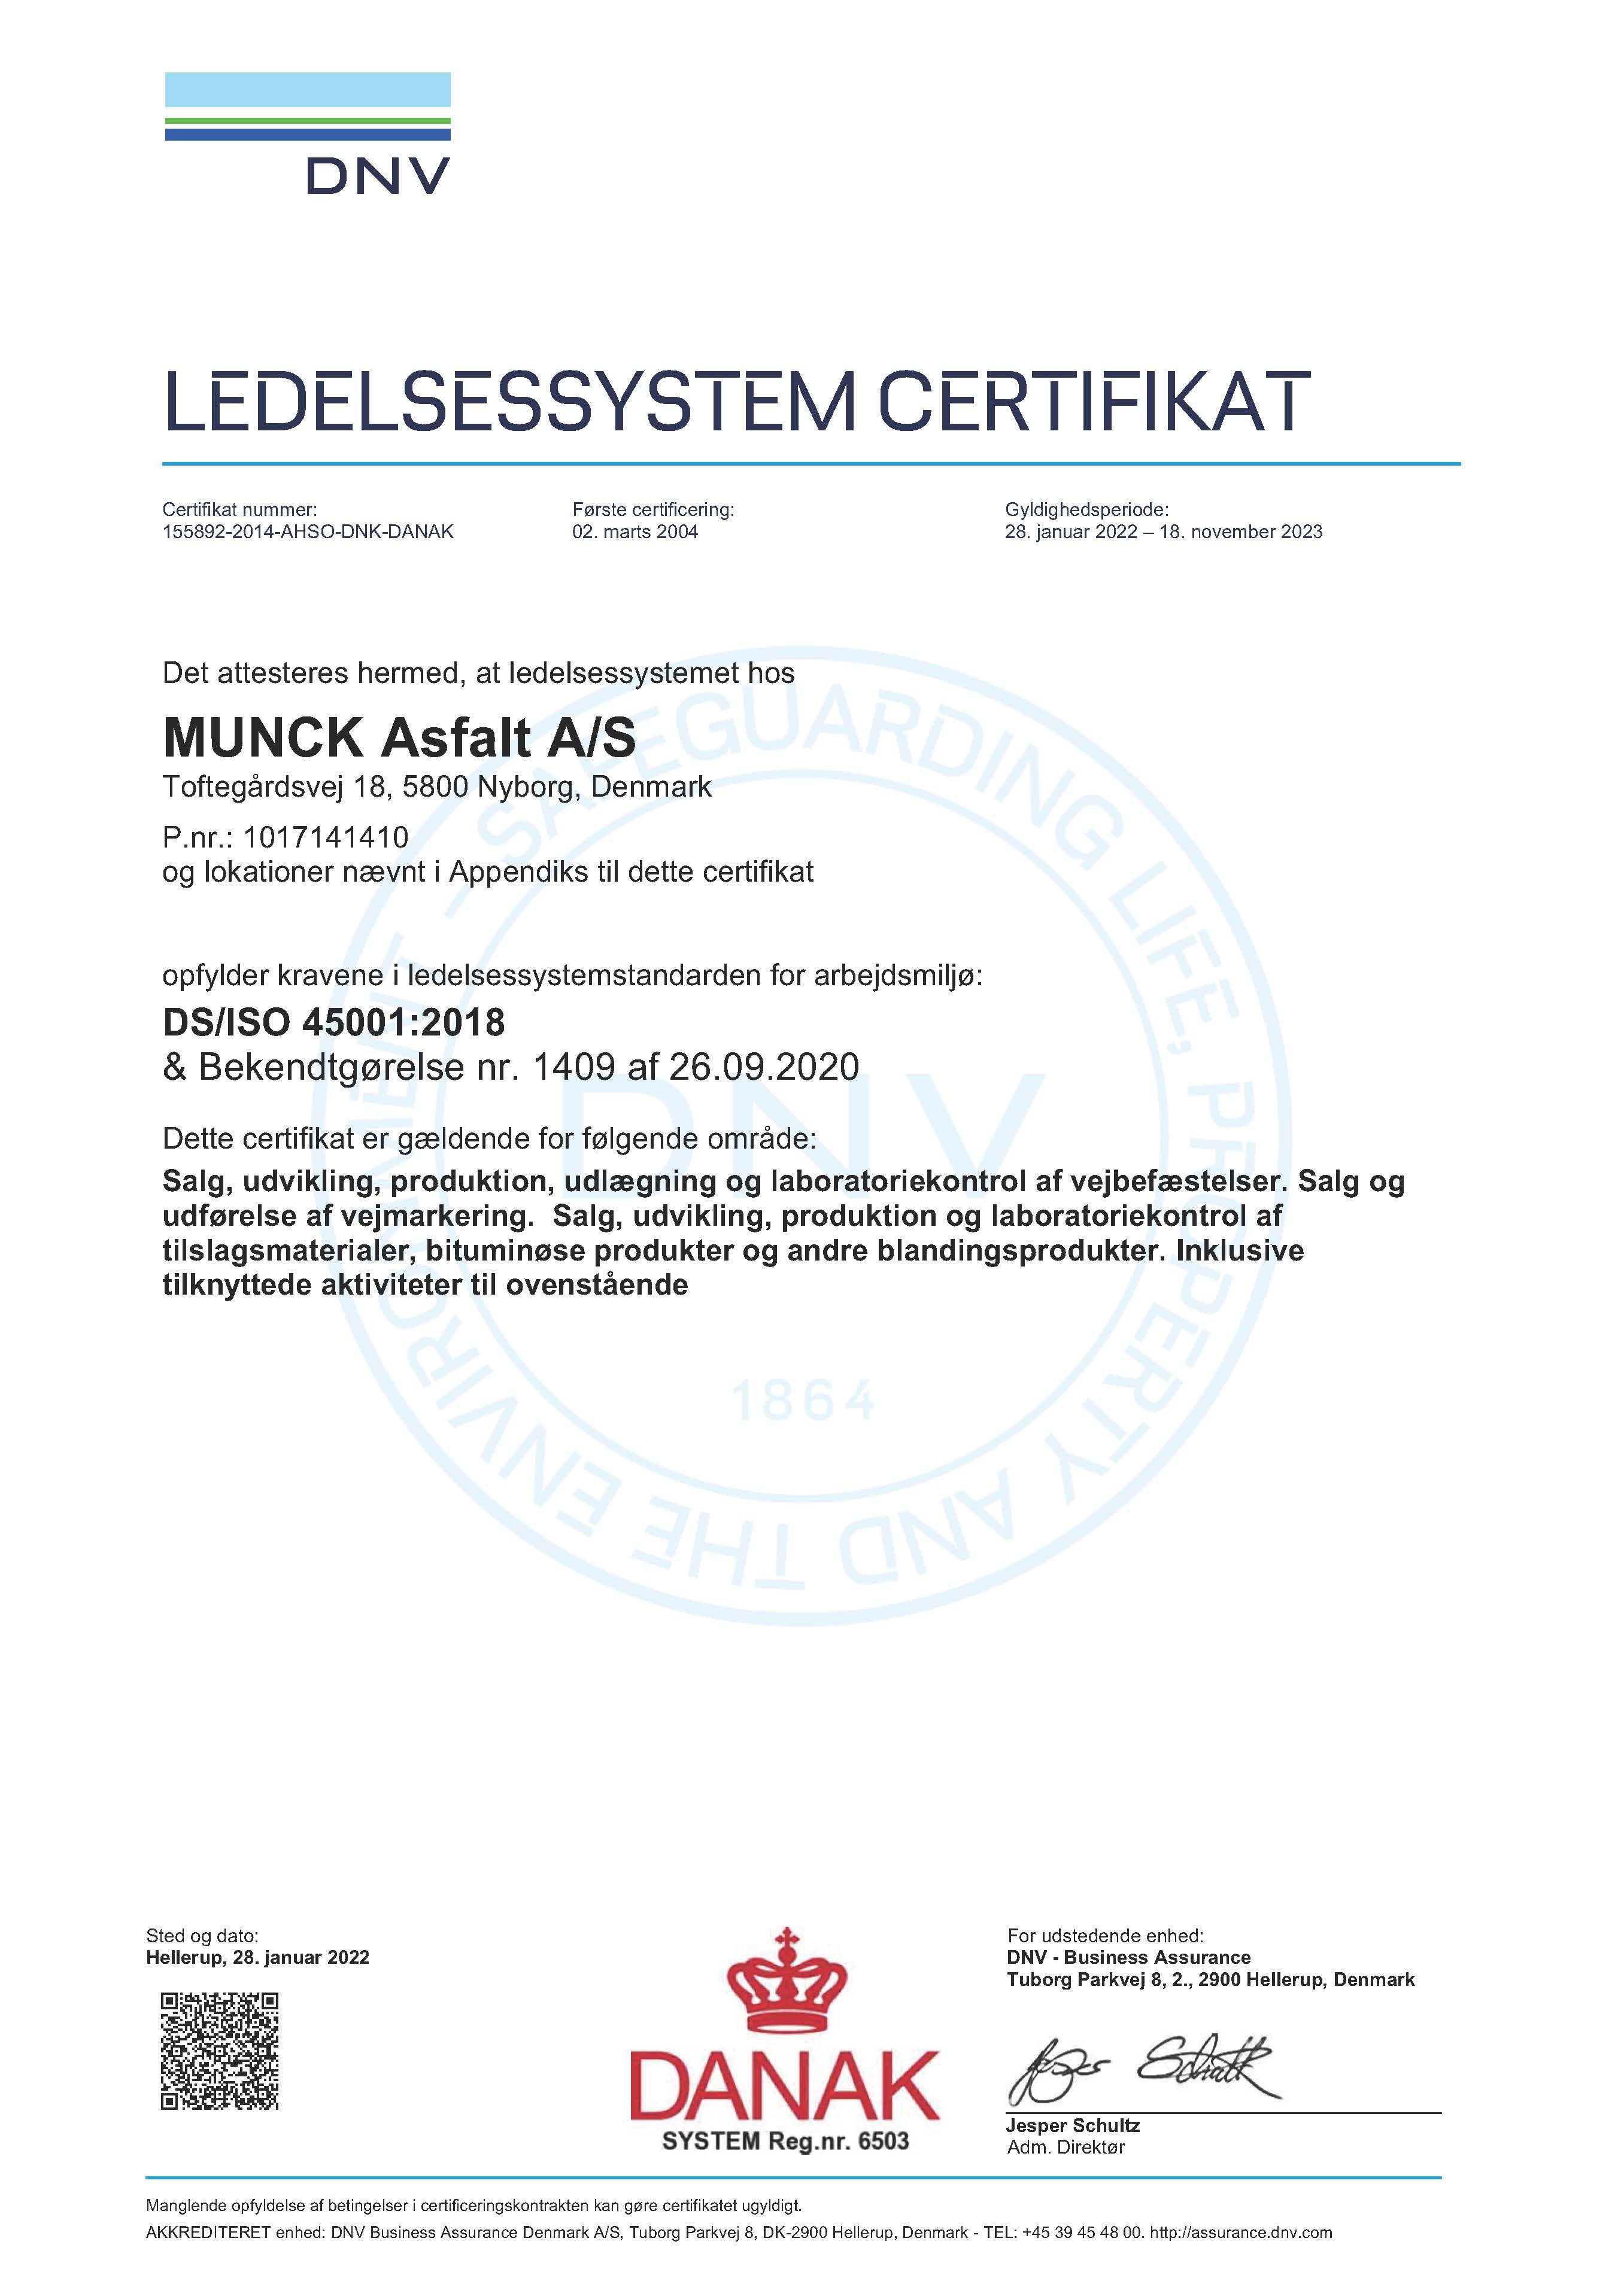 DS/ISO 45001:2018 - Munck Asfalt